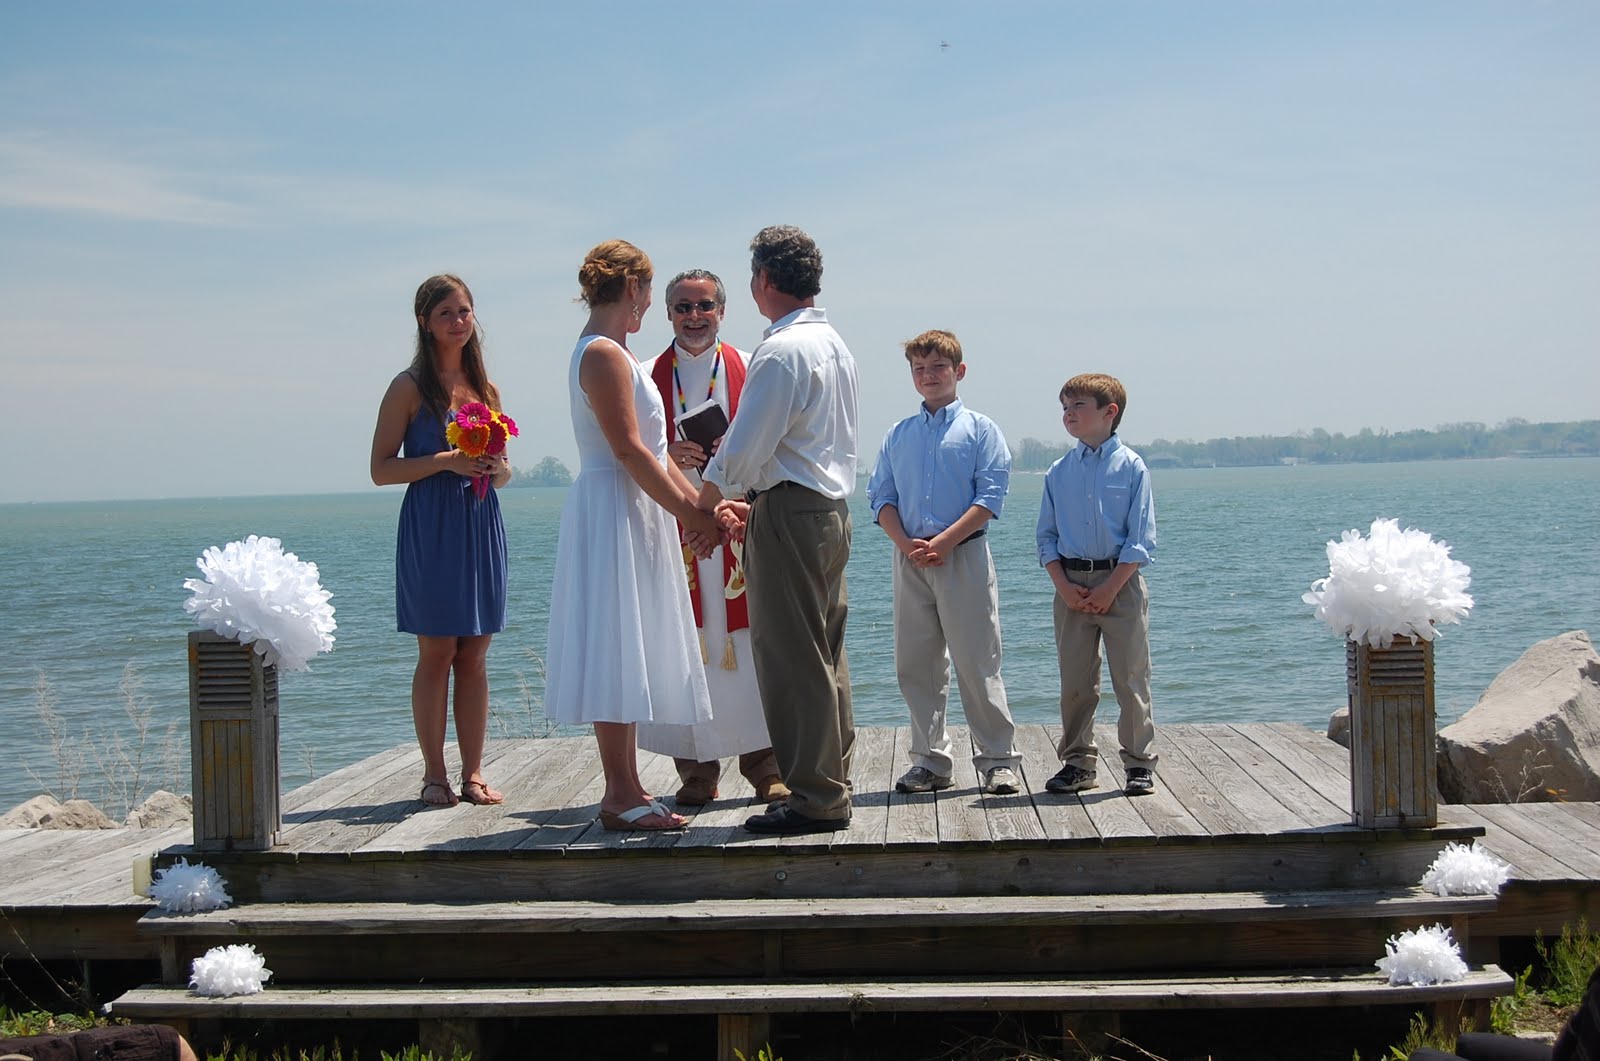 St Hazards Blog On Middle Bass Island An Ohio Wedding On The Beach